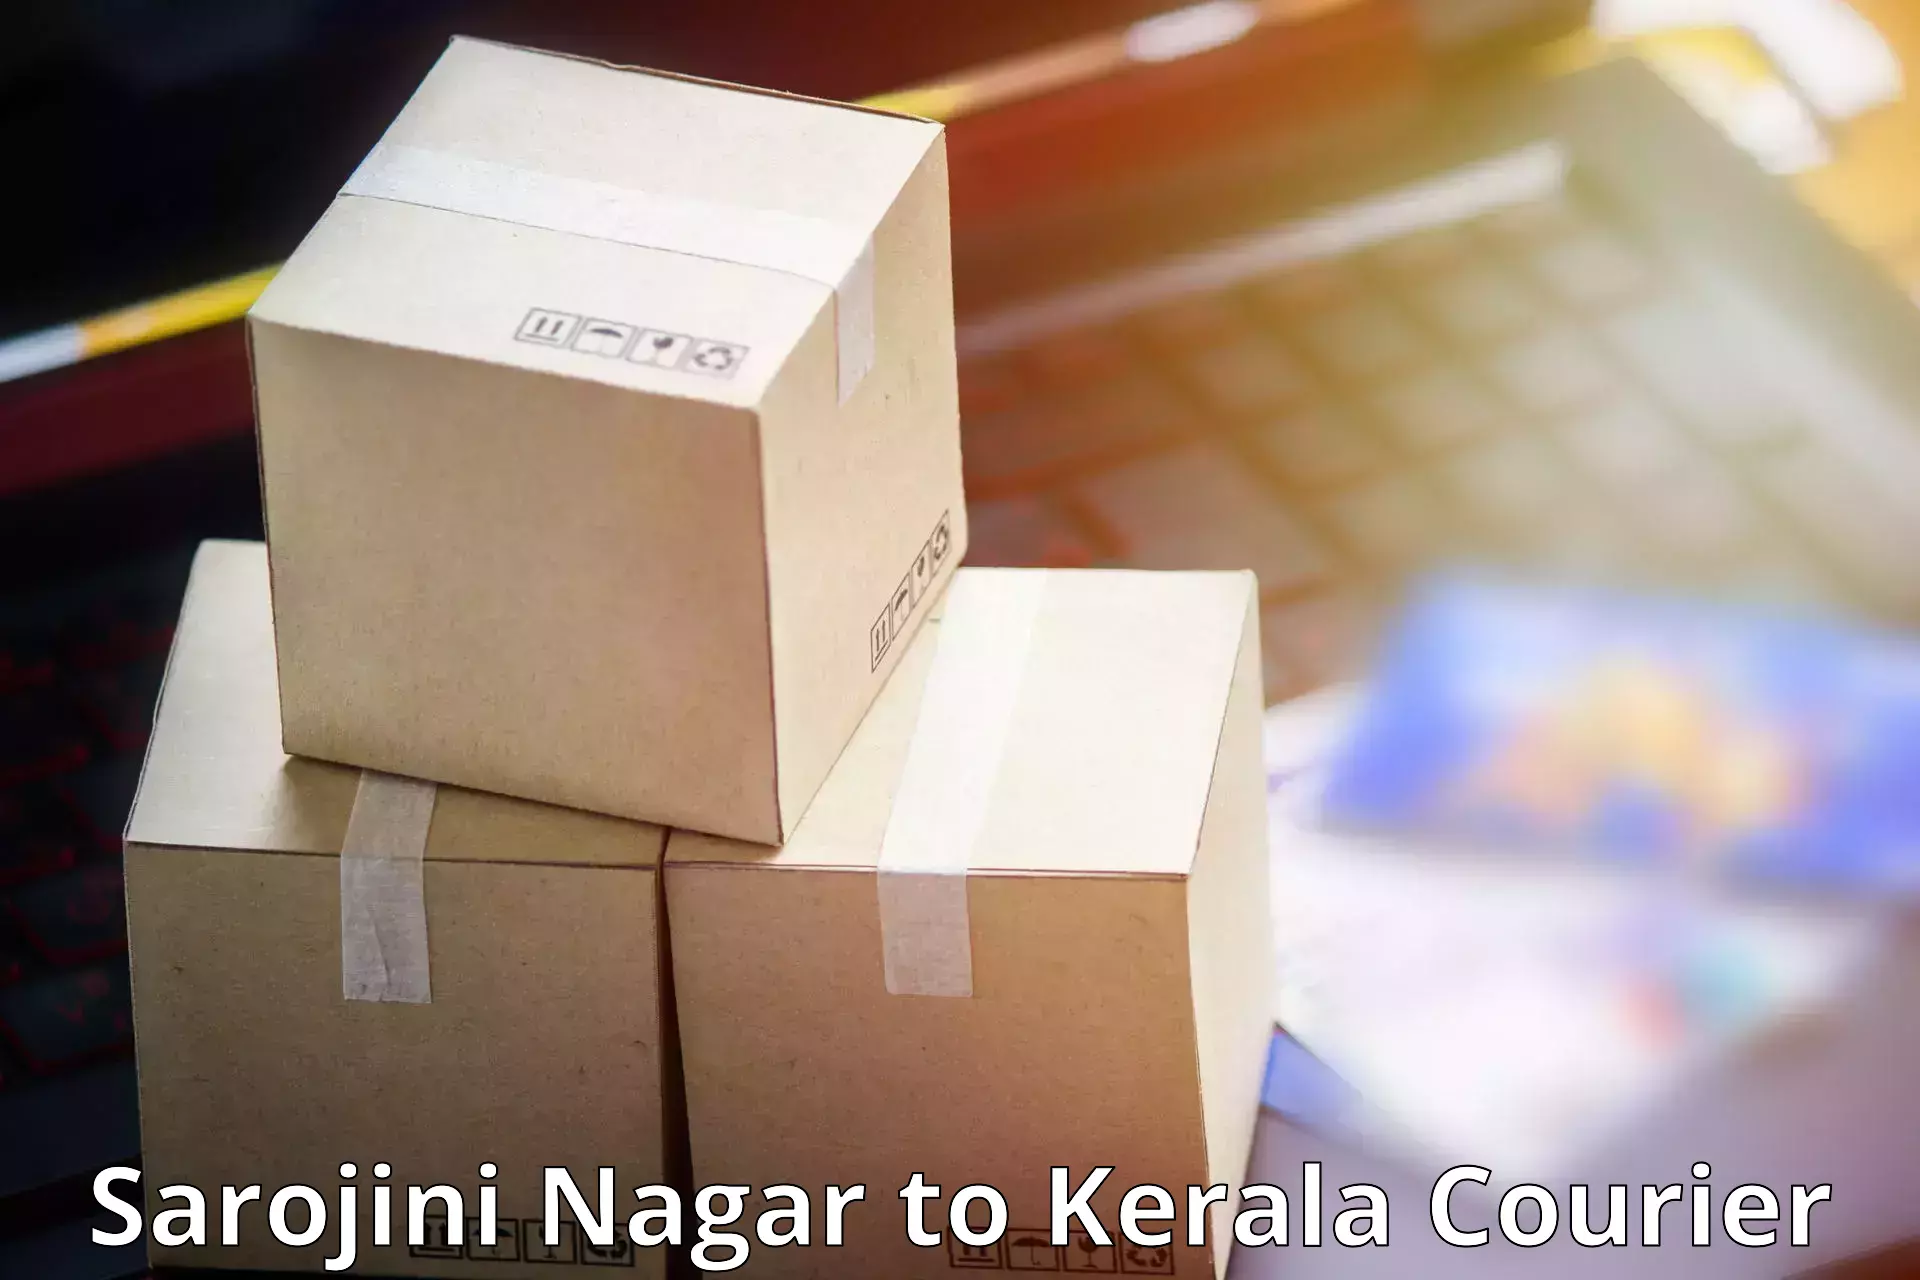 Large package courier Sarojini Nagar to Cochin Port Kochi